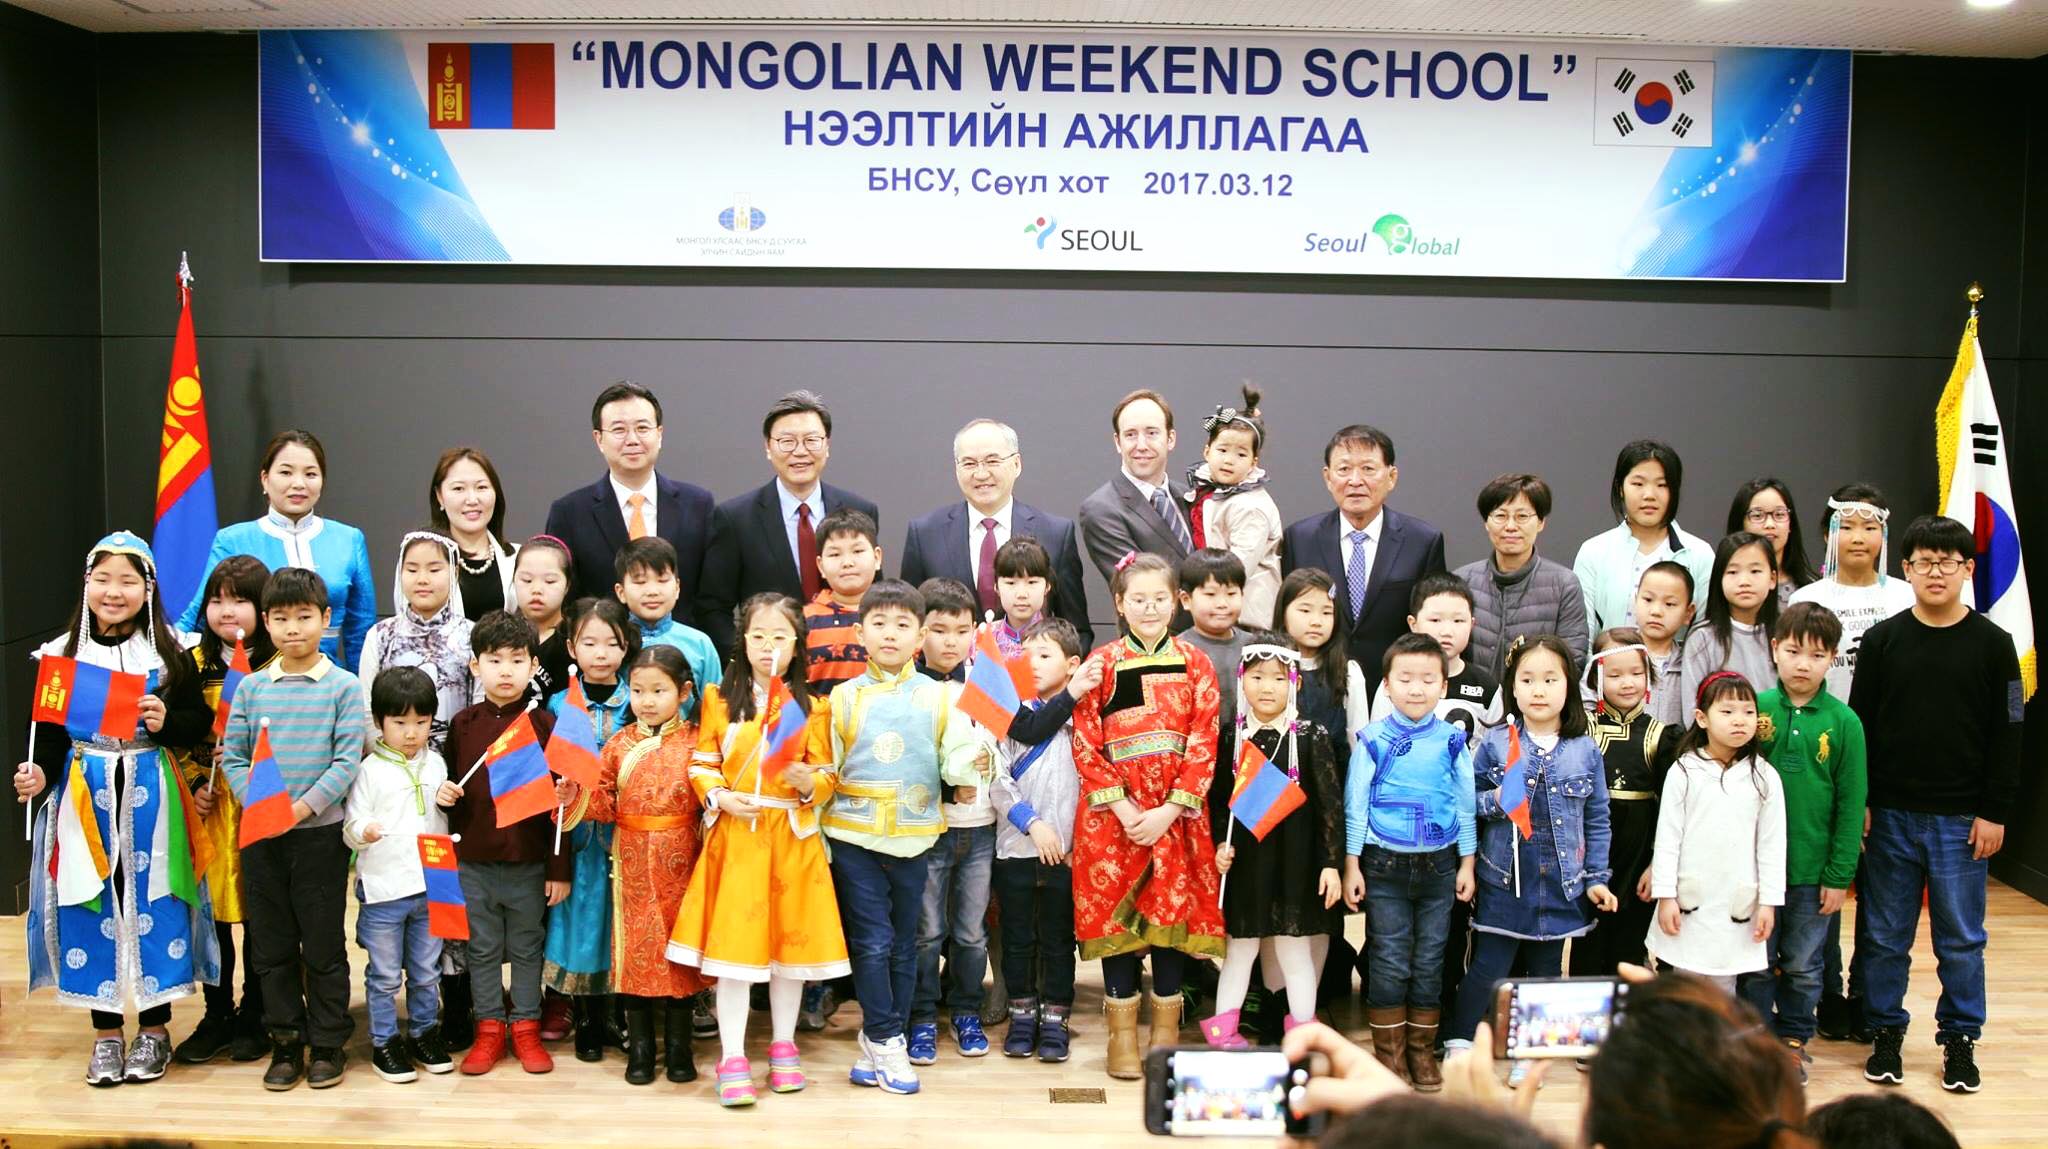 Mongolian_weekend_school1.jpg